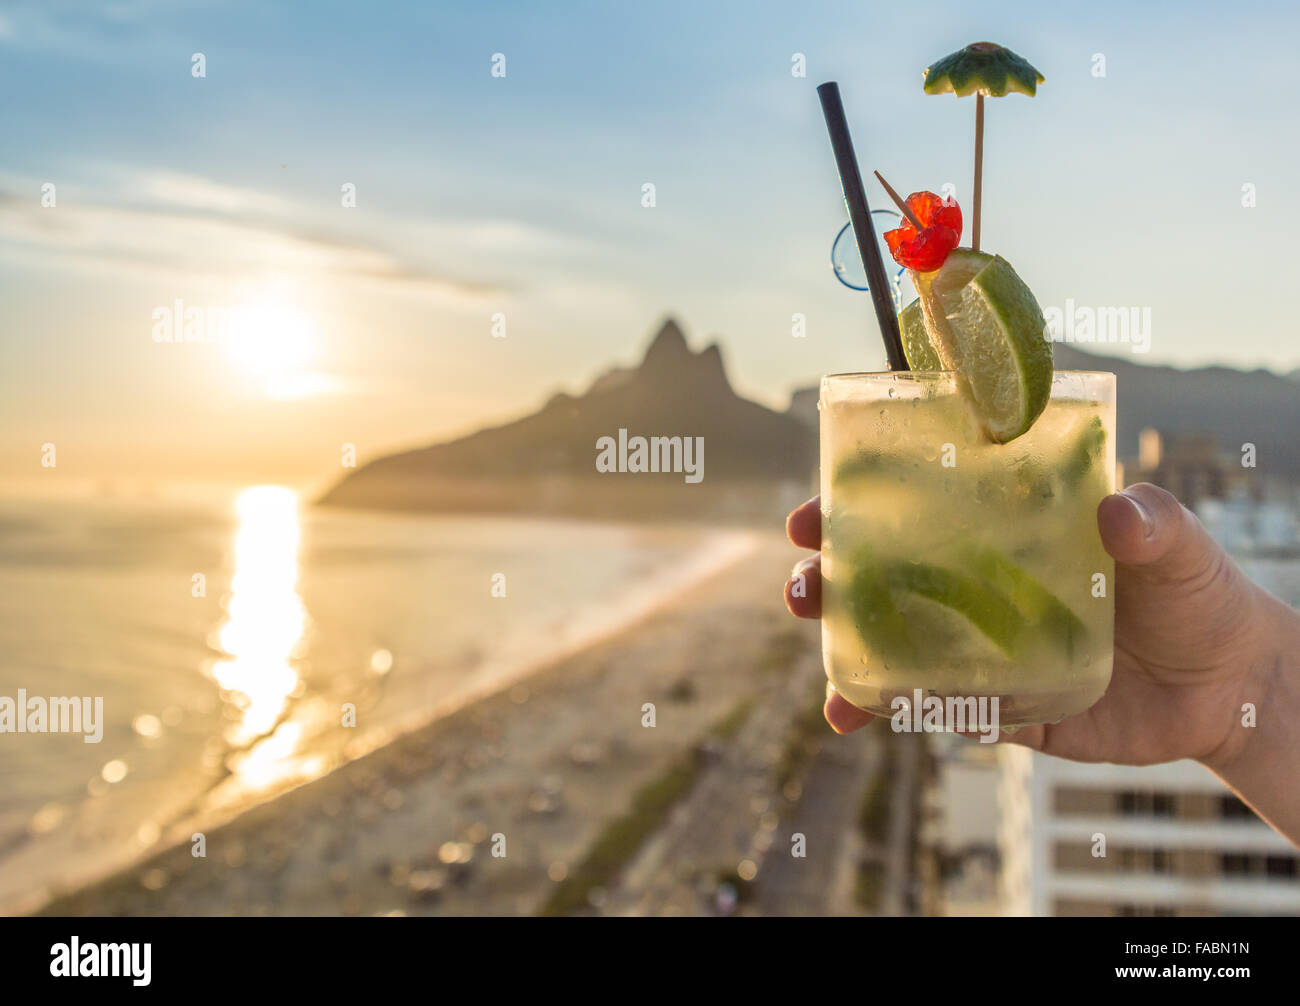 Une délicieuse boisson caipirinha kiwi donnant sur la célèbre plage d'Ipanema à Rio de Janeiro, Brésil Banque D'Images